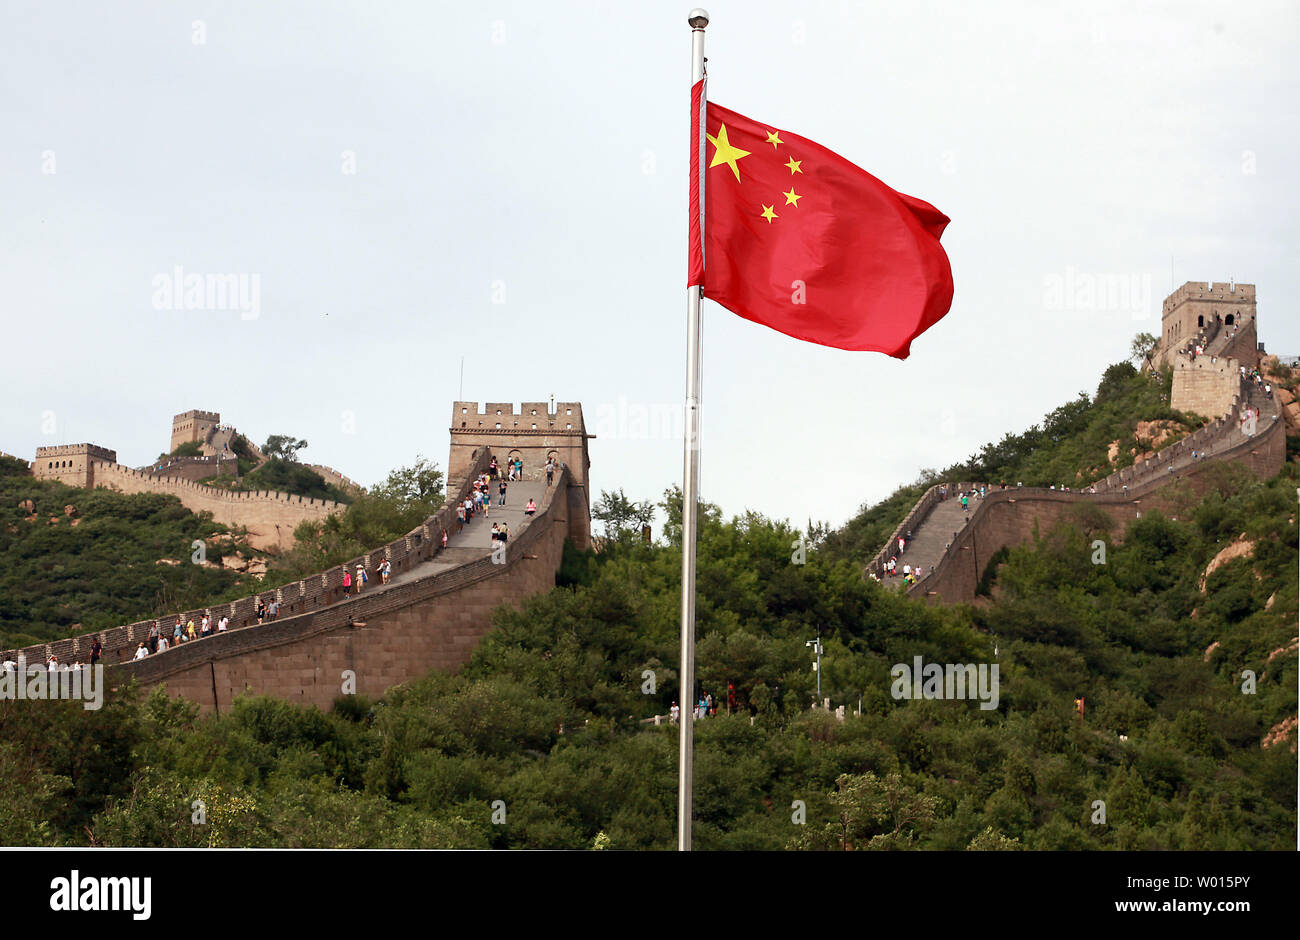 Chinesische und ausländische Touristen besuchen Sie die Chinesische Mauer Badaling Abschnitt der Großen Mauer von China gerade außerhalb von Peking am 8. Juli 2014. Die Große Mauer gilt als einer der weltweit Engineering Wunder und zieht Hunderte von Tausenden von Touristen jedes Jahr. Der bekannteste Abschnitt der Großen Mauer bei Badaling, die von Hunderten von Staats- besucht worden ist, - Der erste war der sowjetischen Staatsmann Klim Woroschilow in 1957. UPI/Stephen Rasierer Stockfoto